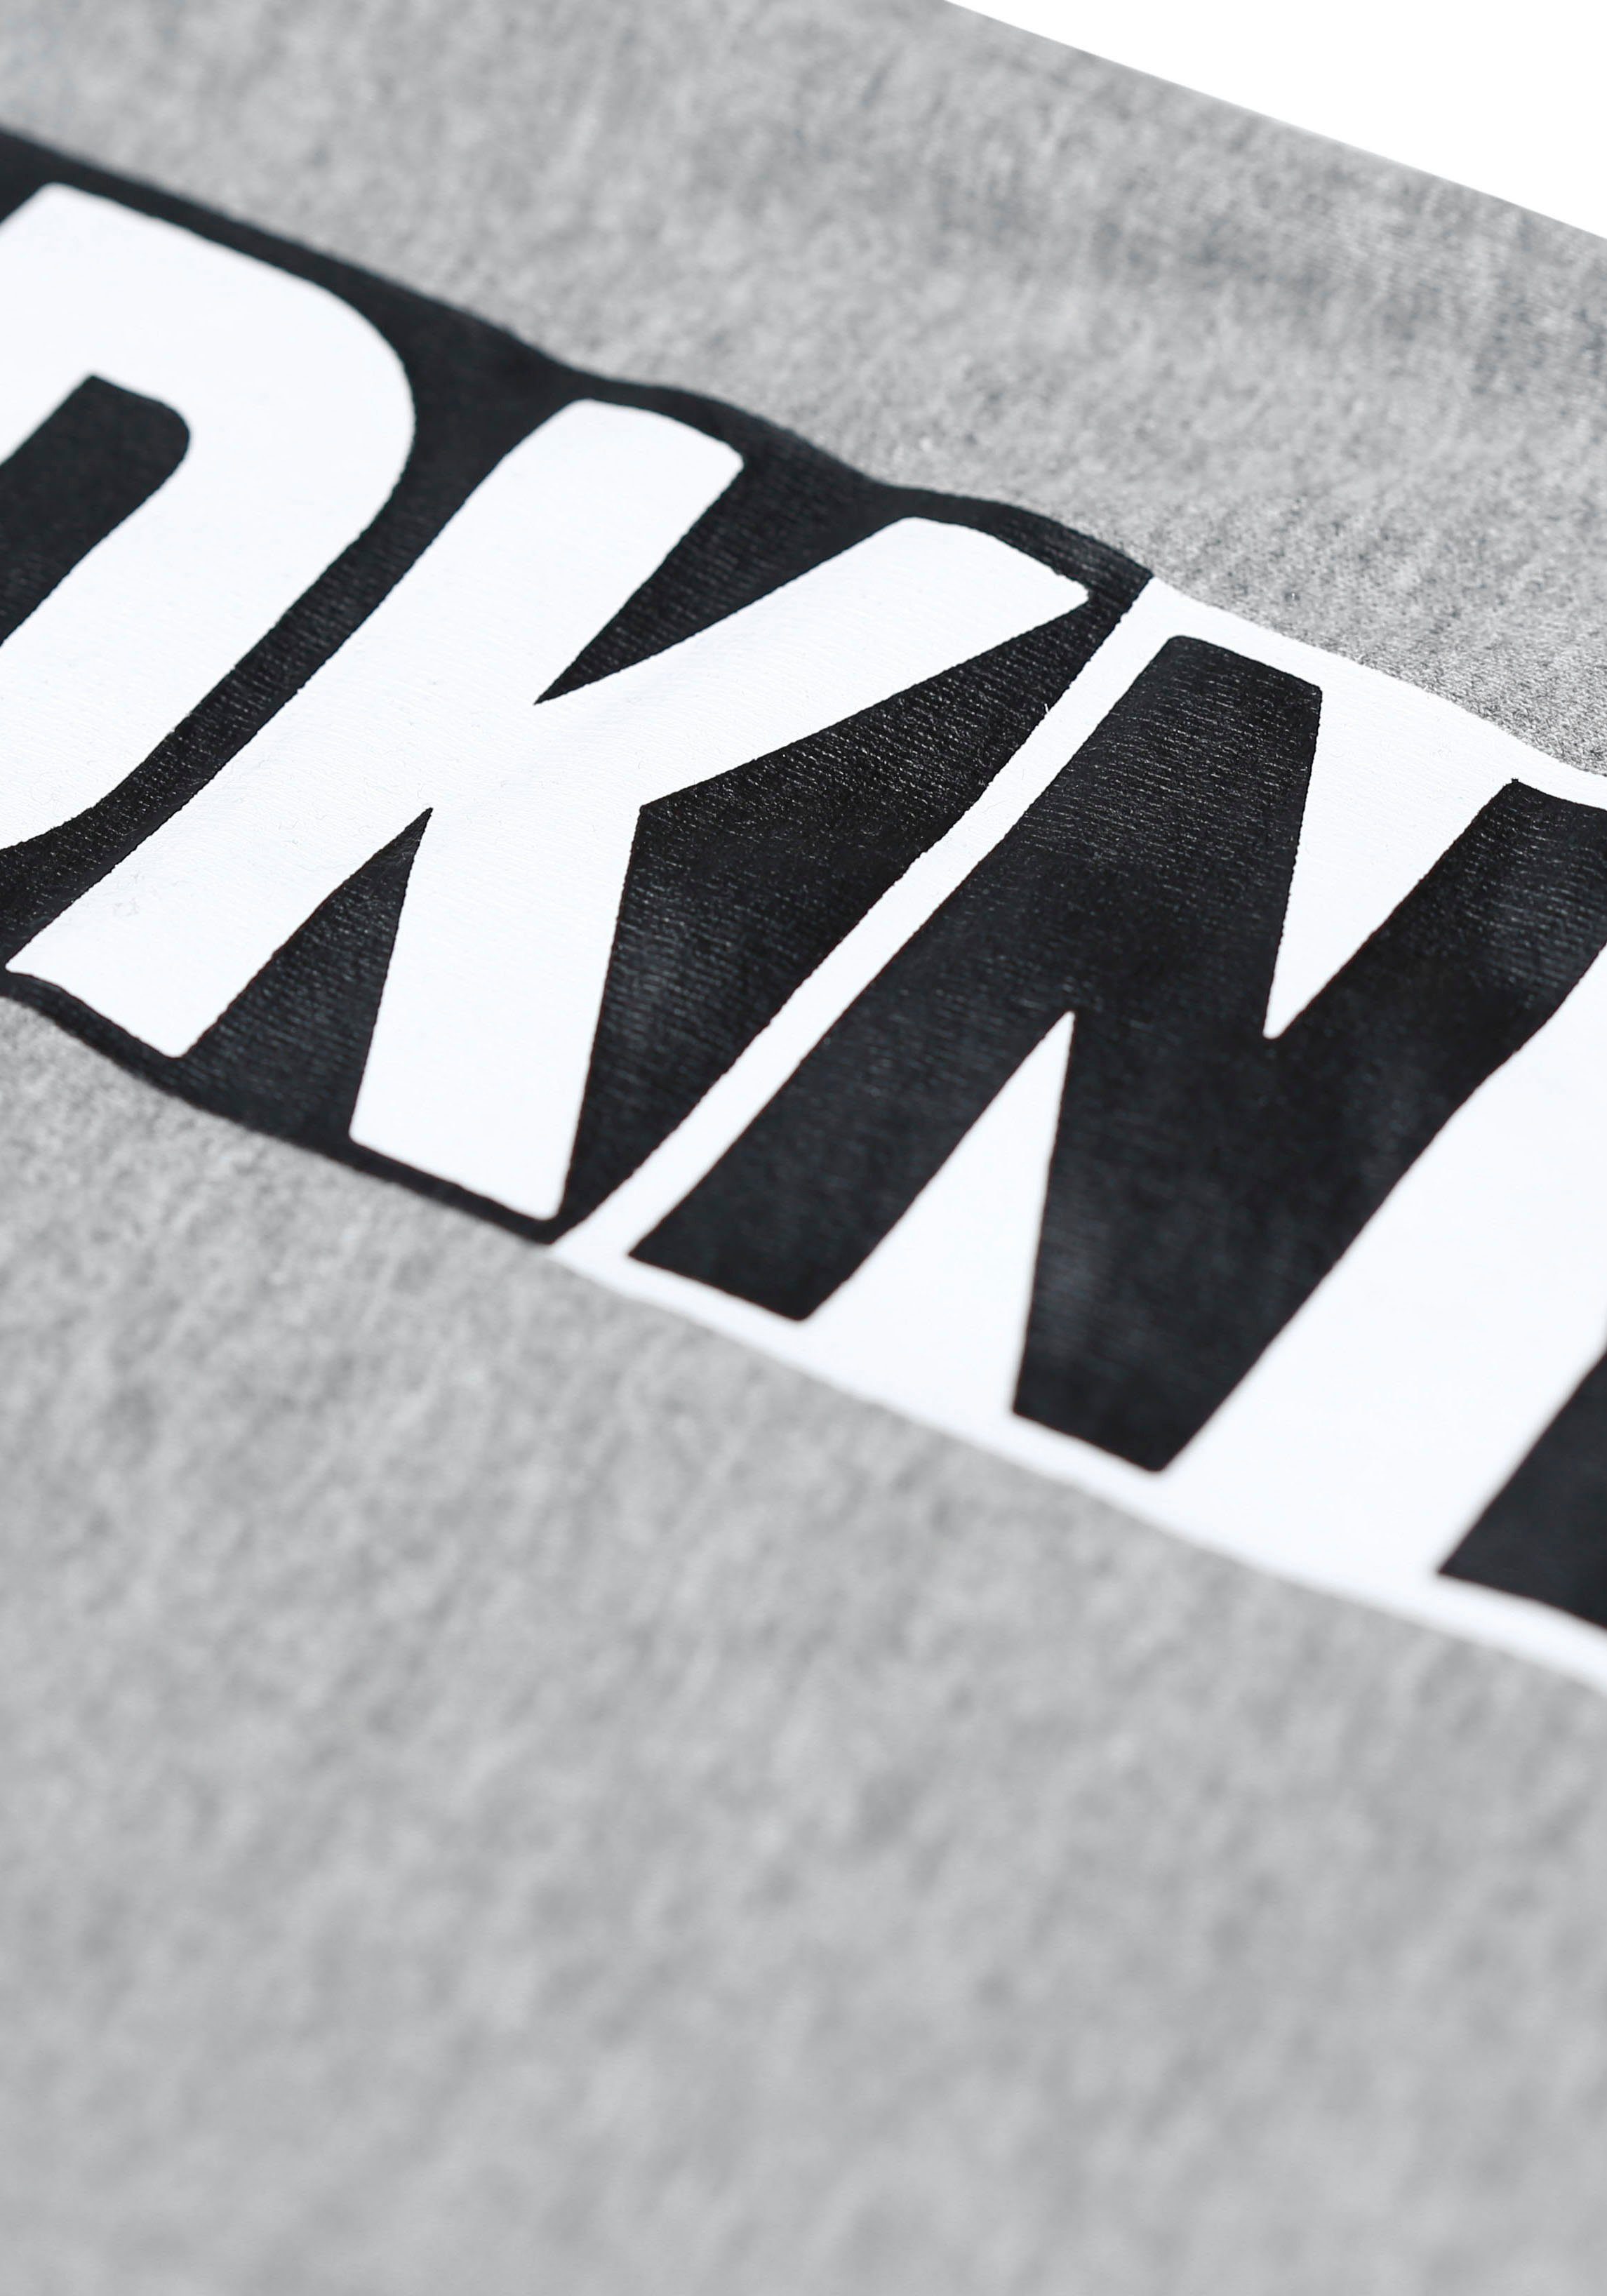 Loungepants grey DKNY elastischem mit Logo-Bündchen